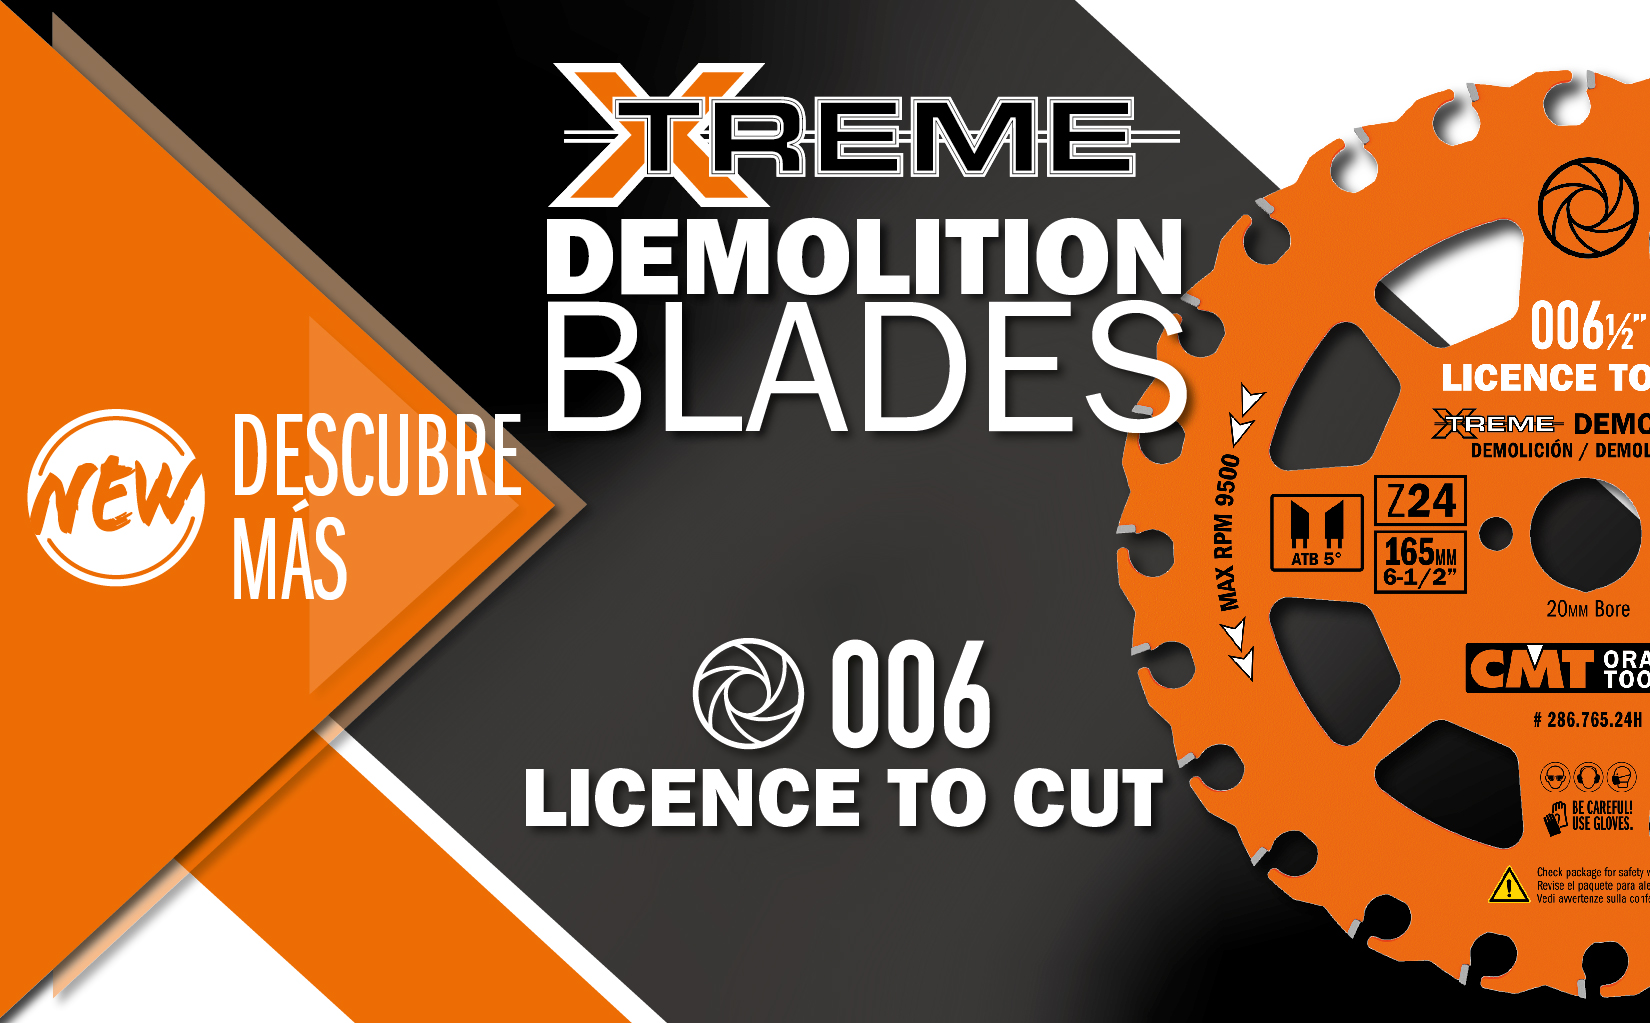 Nueva sierra circular de demolición Xtreme para cortar madera con clavos